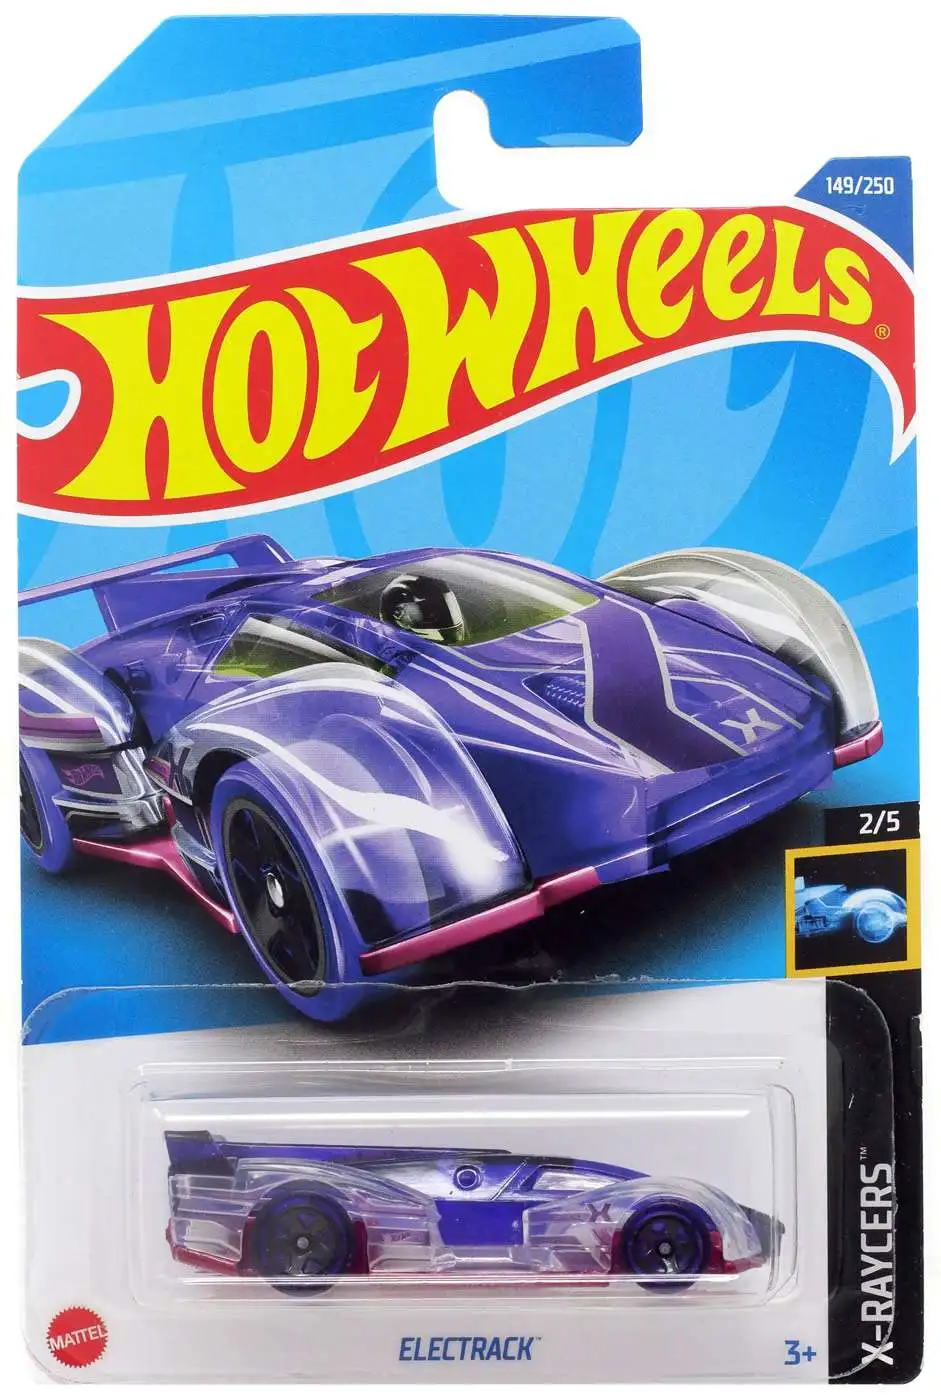 Hot Wheels X Raycers Electrack 164 Diecast Car 25 Mattel Toywiz